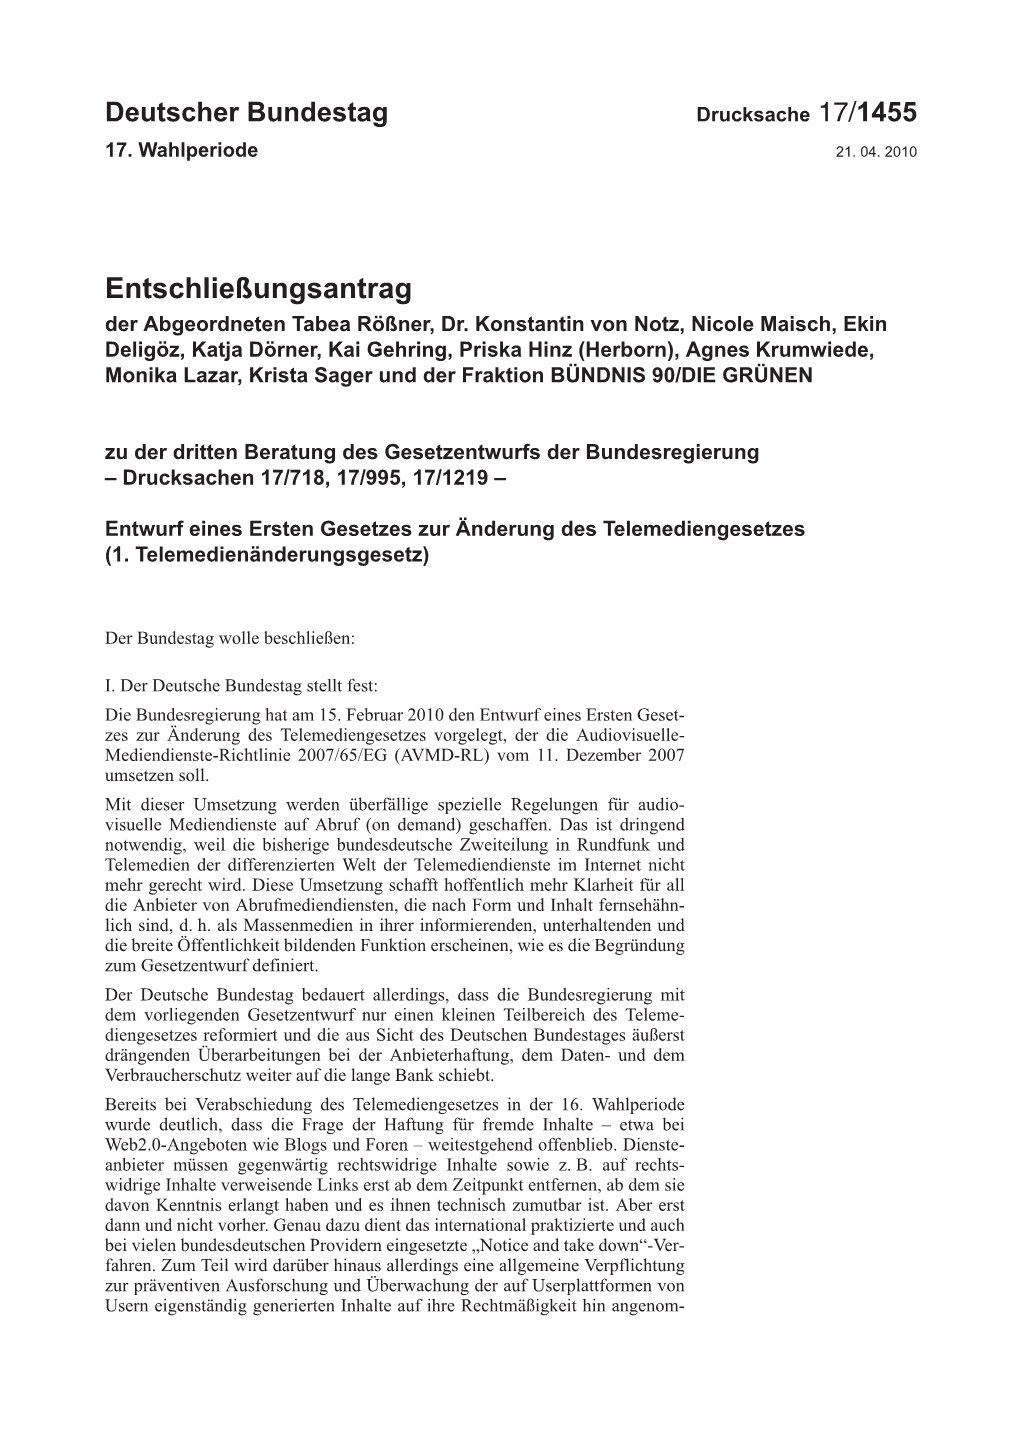 Entschließungsantrag Der Abgeordneten Tabea Rößner, Dr